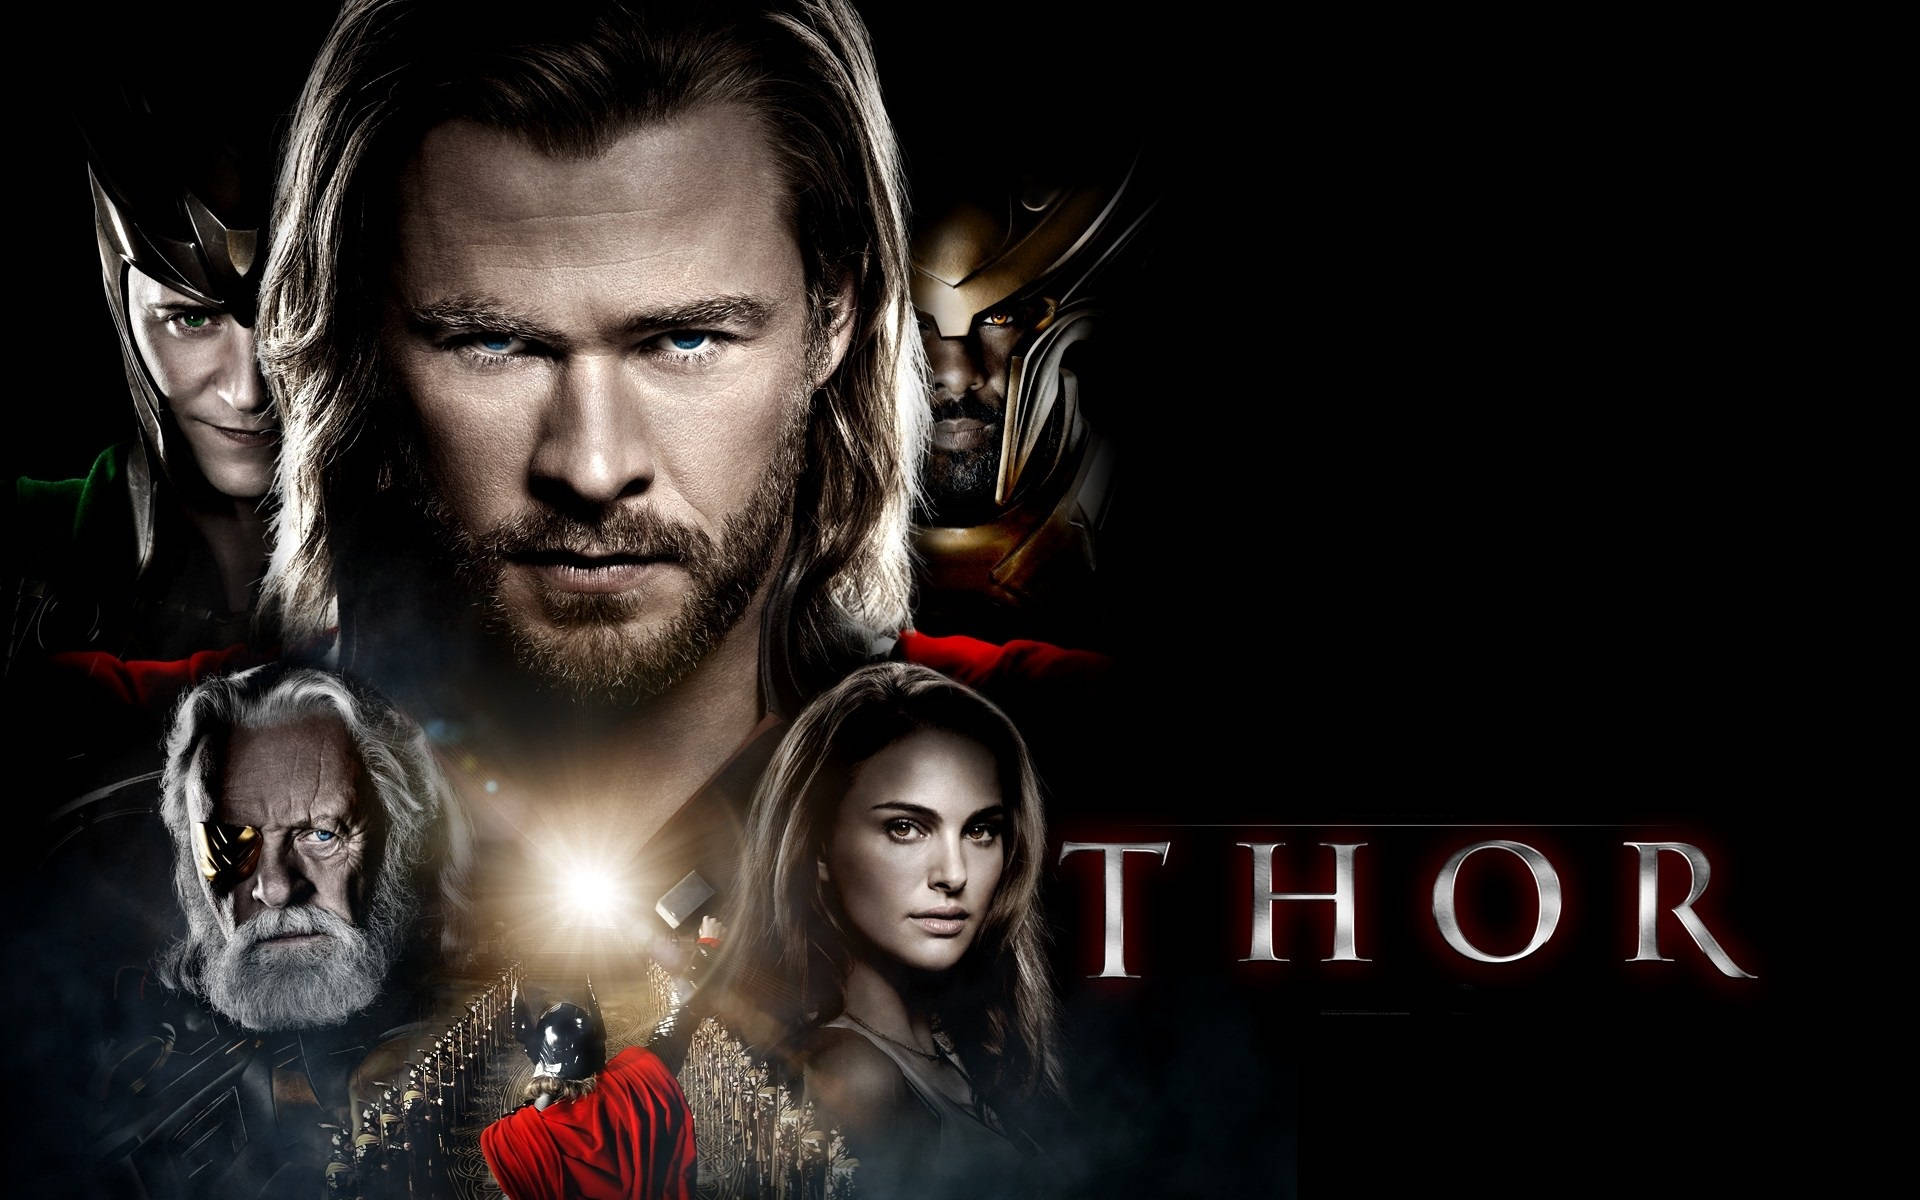 Películadel 2013 De Marvel Studios: Thor, El Superhéroe. Fondo de pantalla